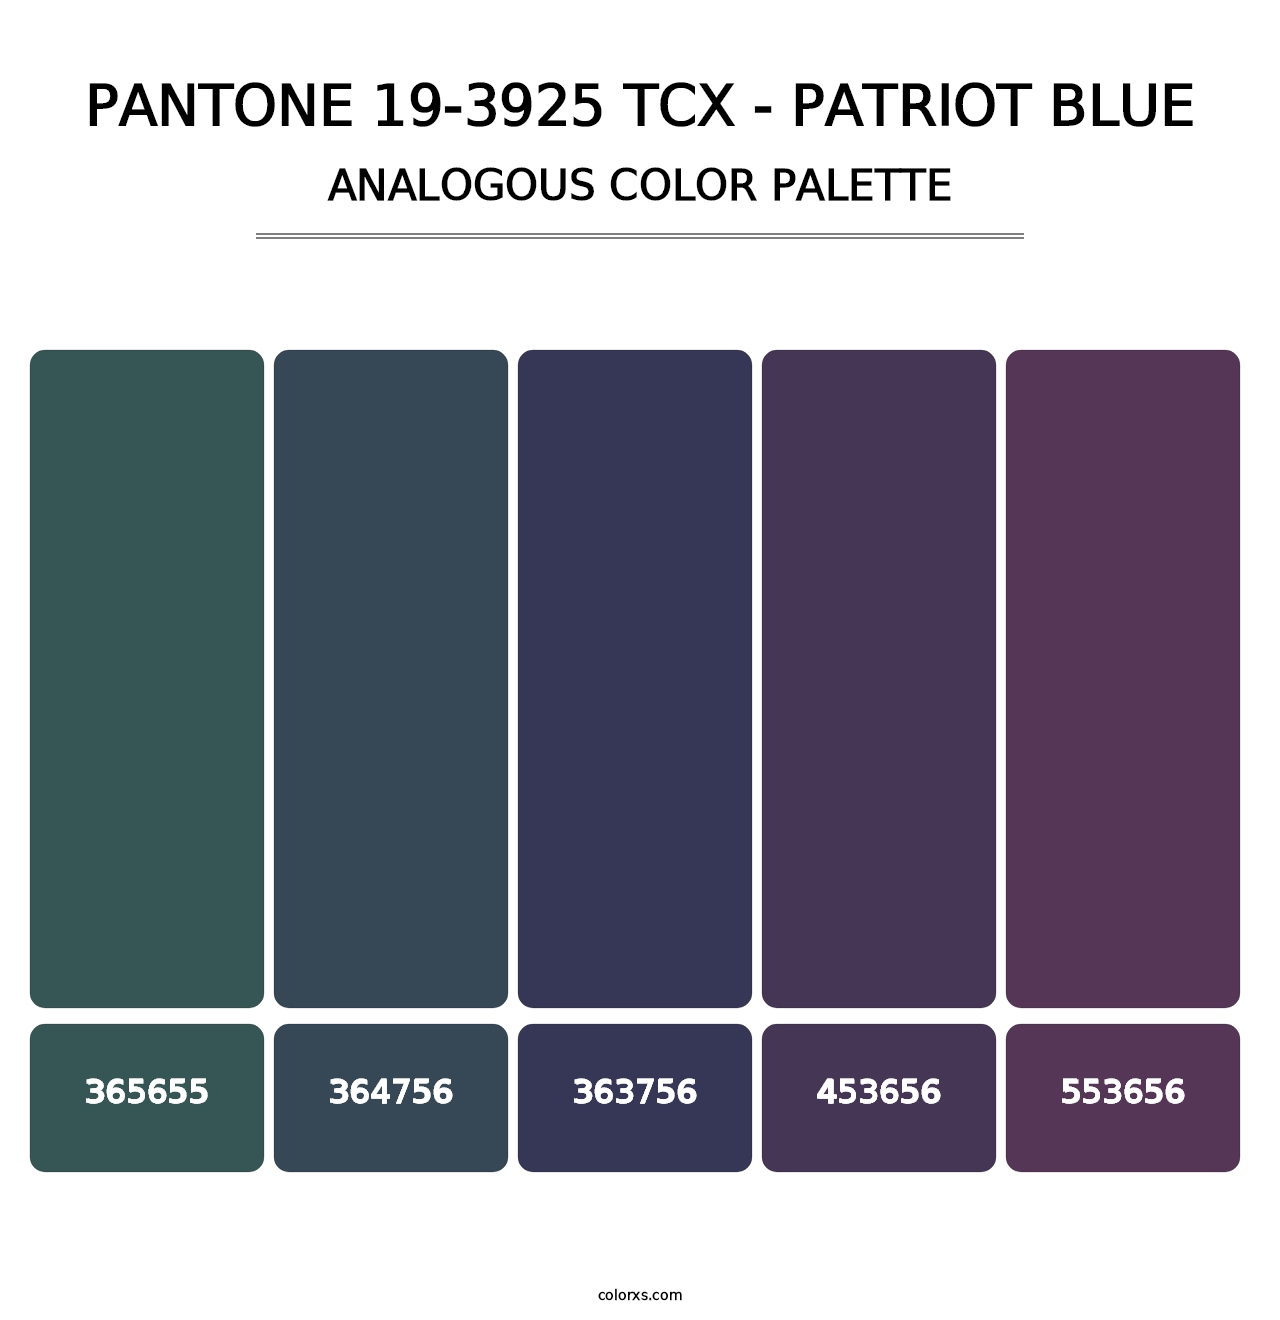 PANTONE 19-3925 TCX - Patriot Blue - Analogous Color Palette